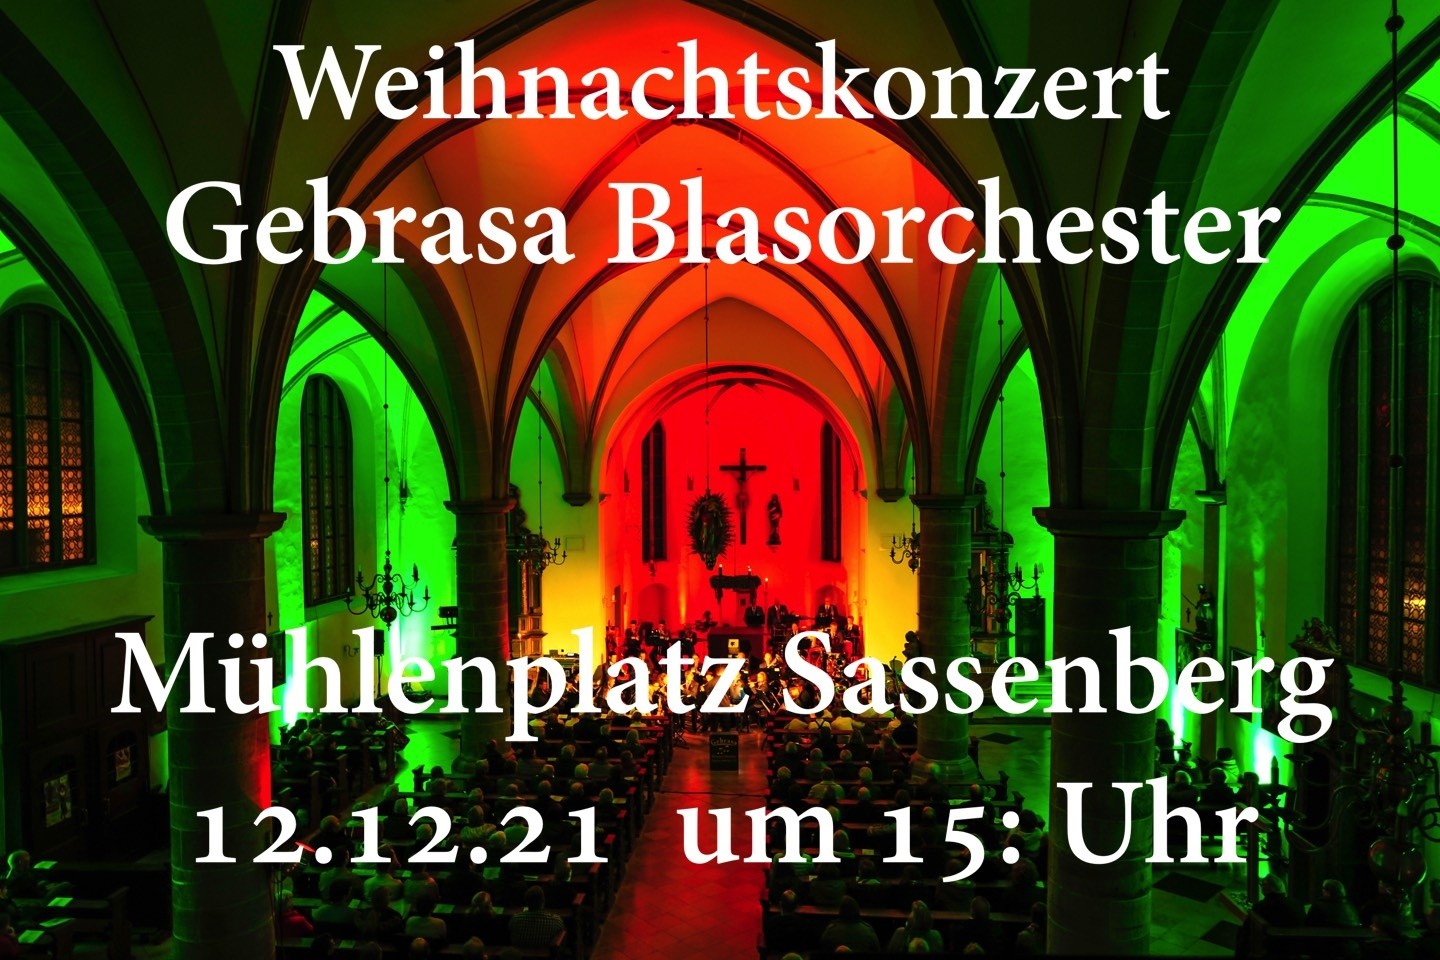 Open-Air-Weihnachtskonzert,Gebrasa Blasorchesters,3. Advent,Sassenberg,Mühlenplatz,